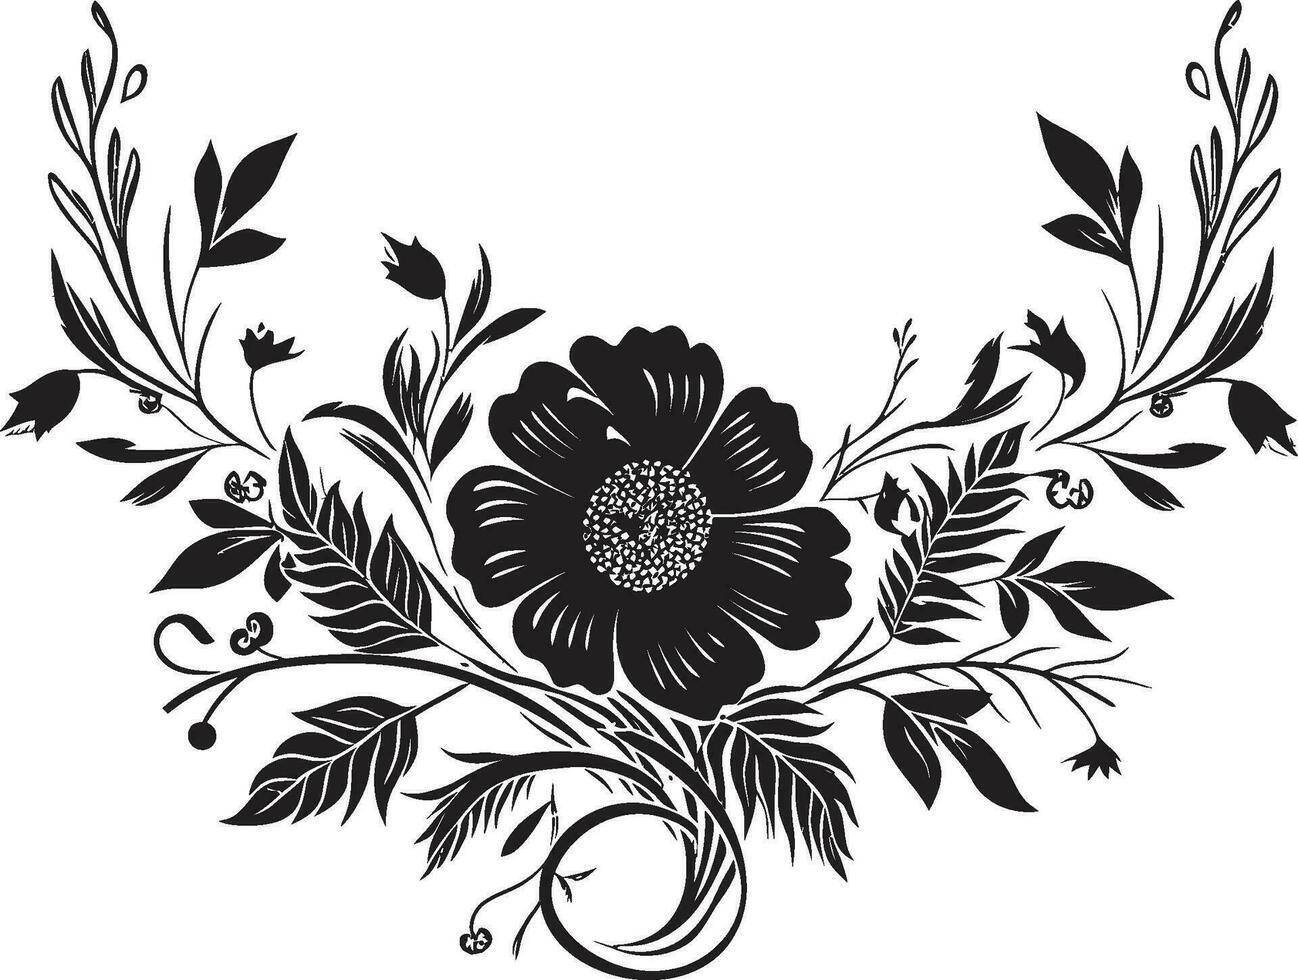 artigianale inchiostrato giardini fatto a mano logo elementi grafite fiorire sinfonia noir vettore floreale emblemi